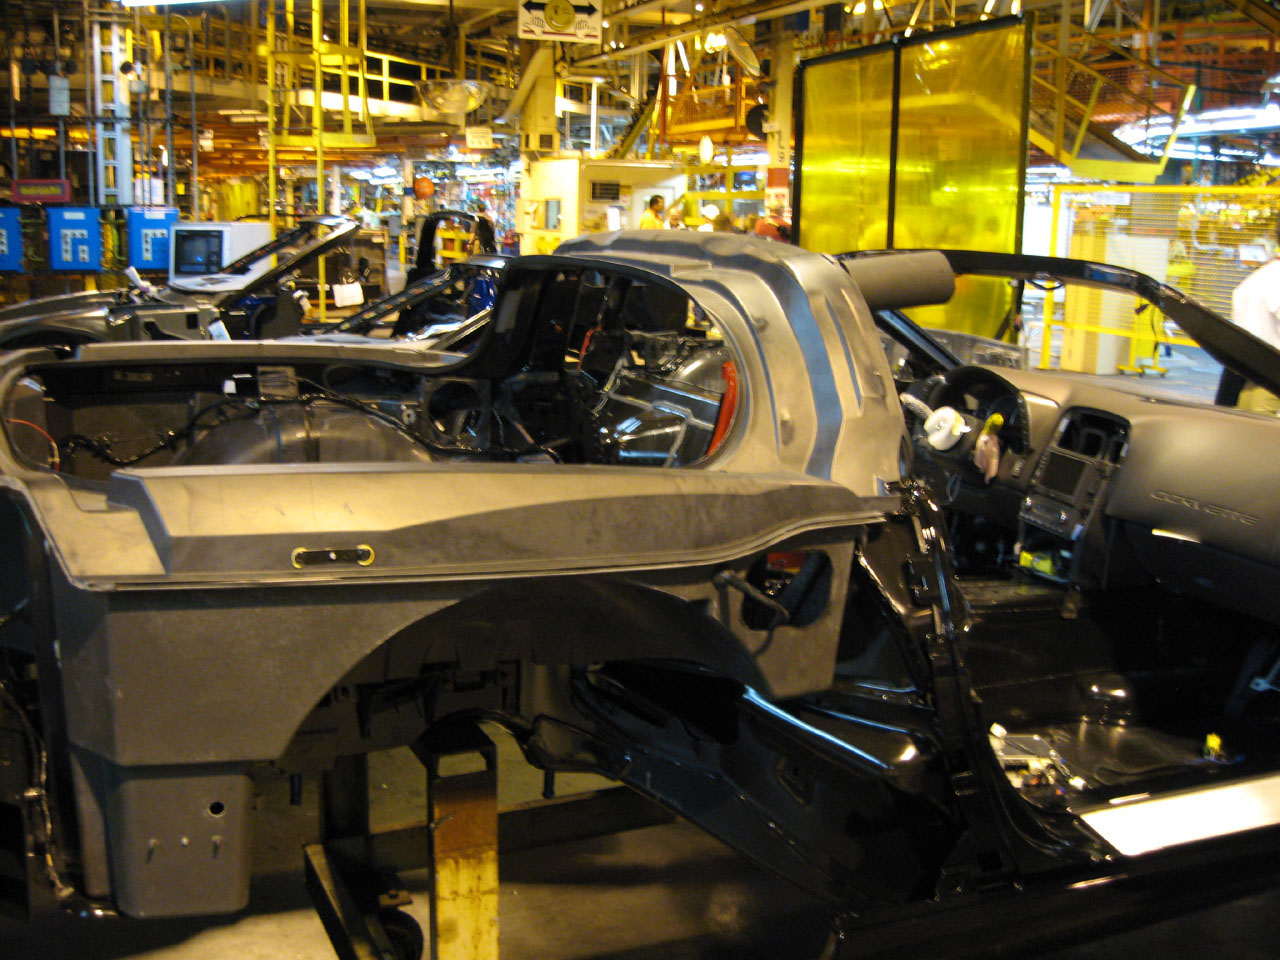 2007 Corvette Production